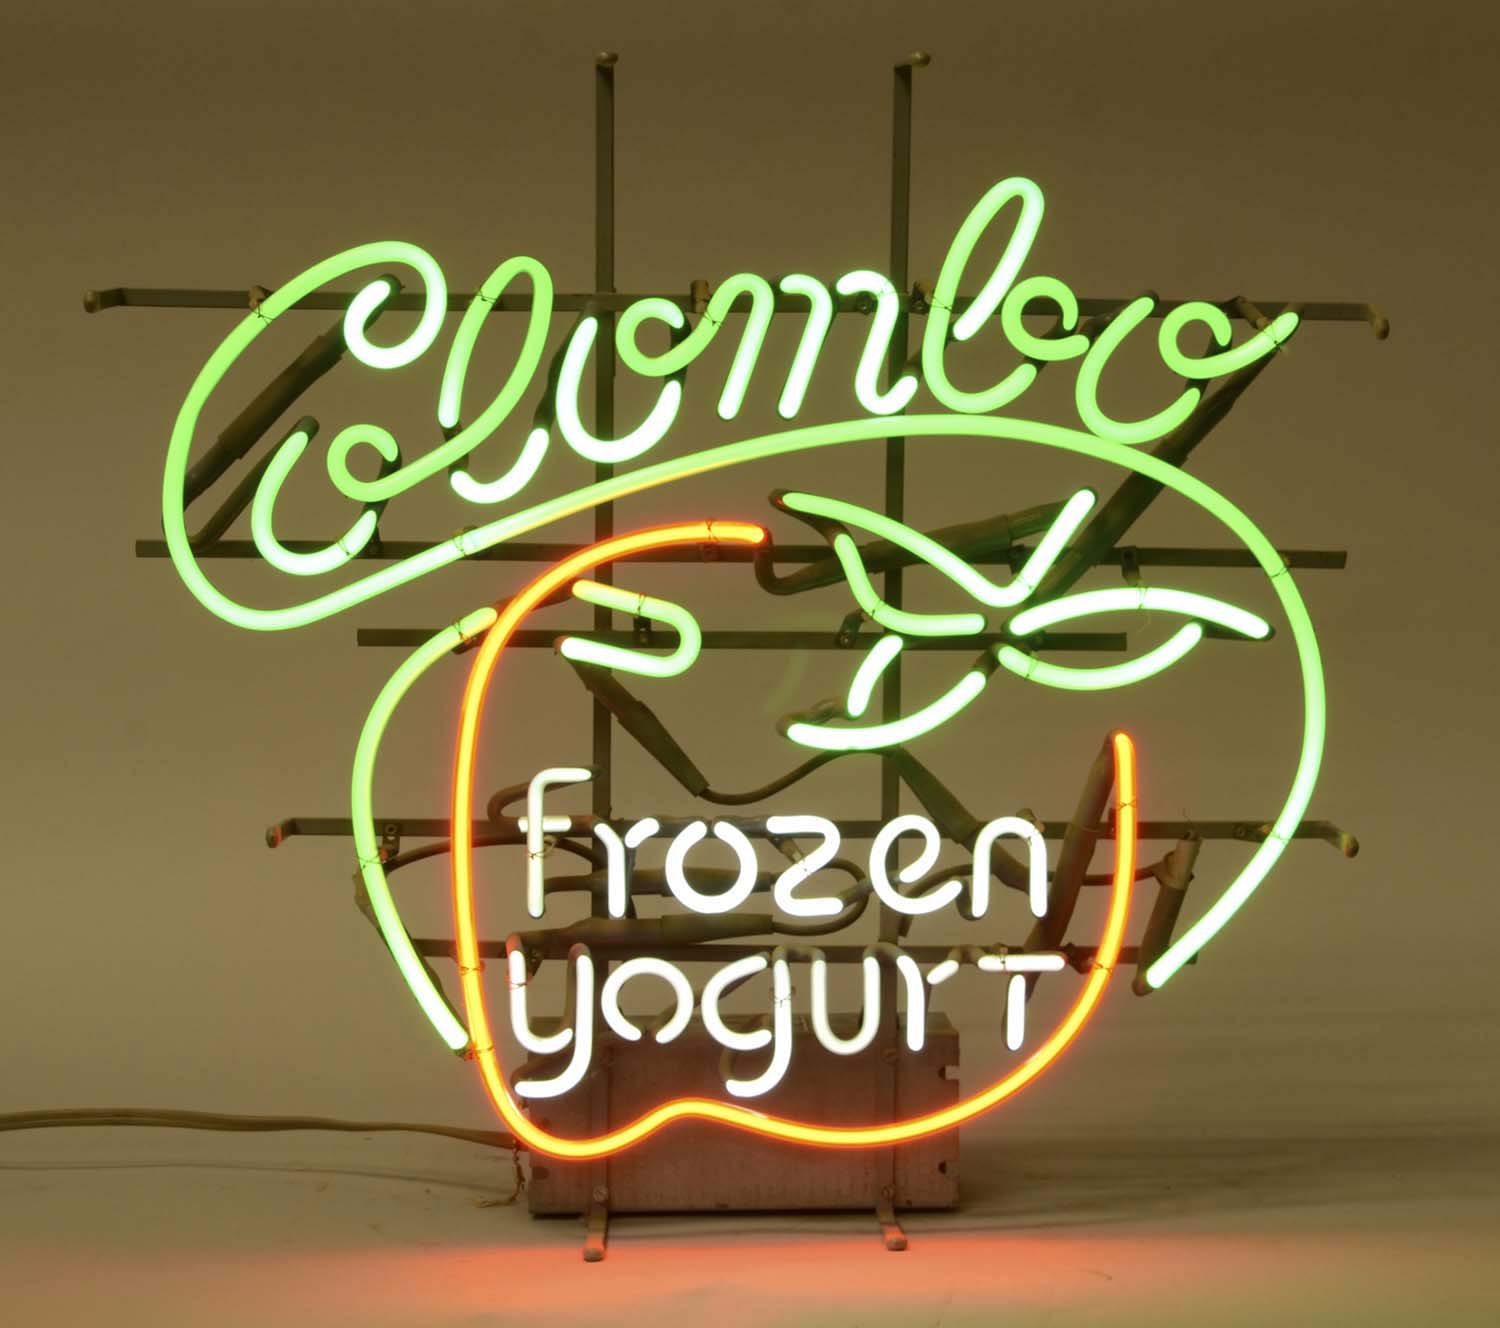 colombo frozen yogurt